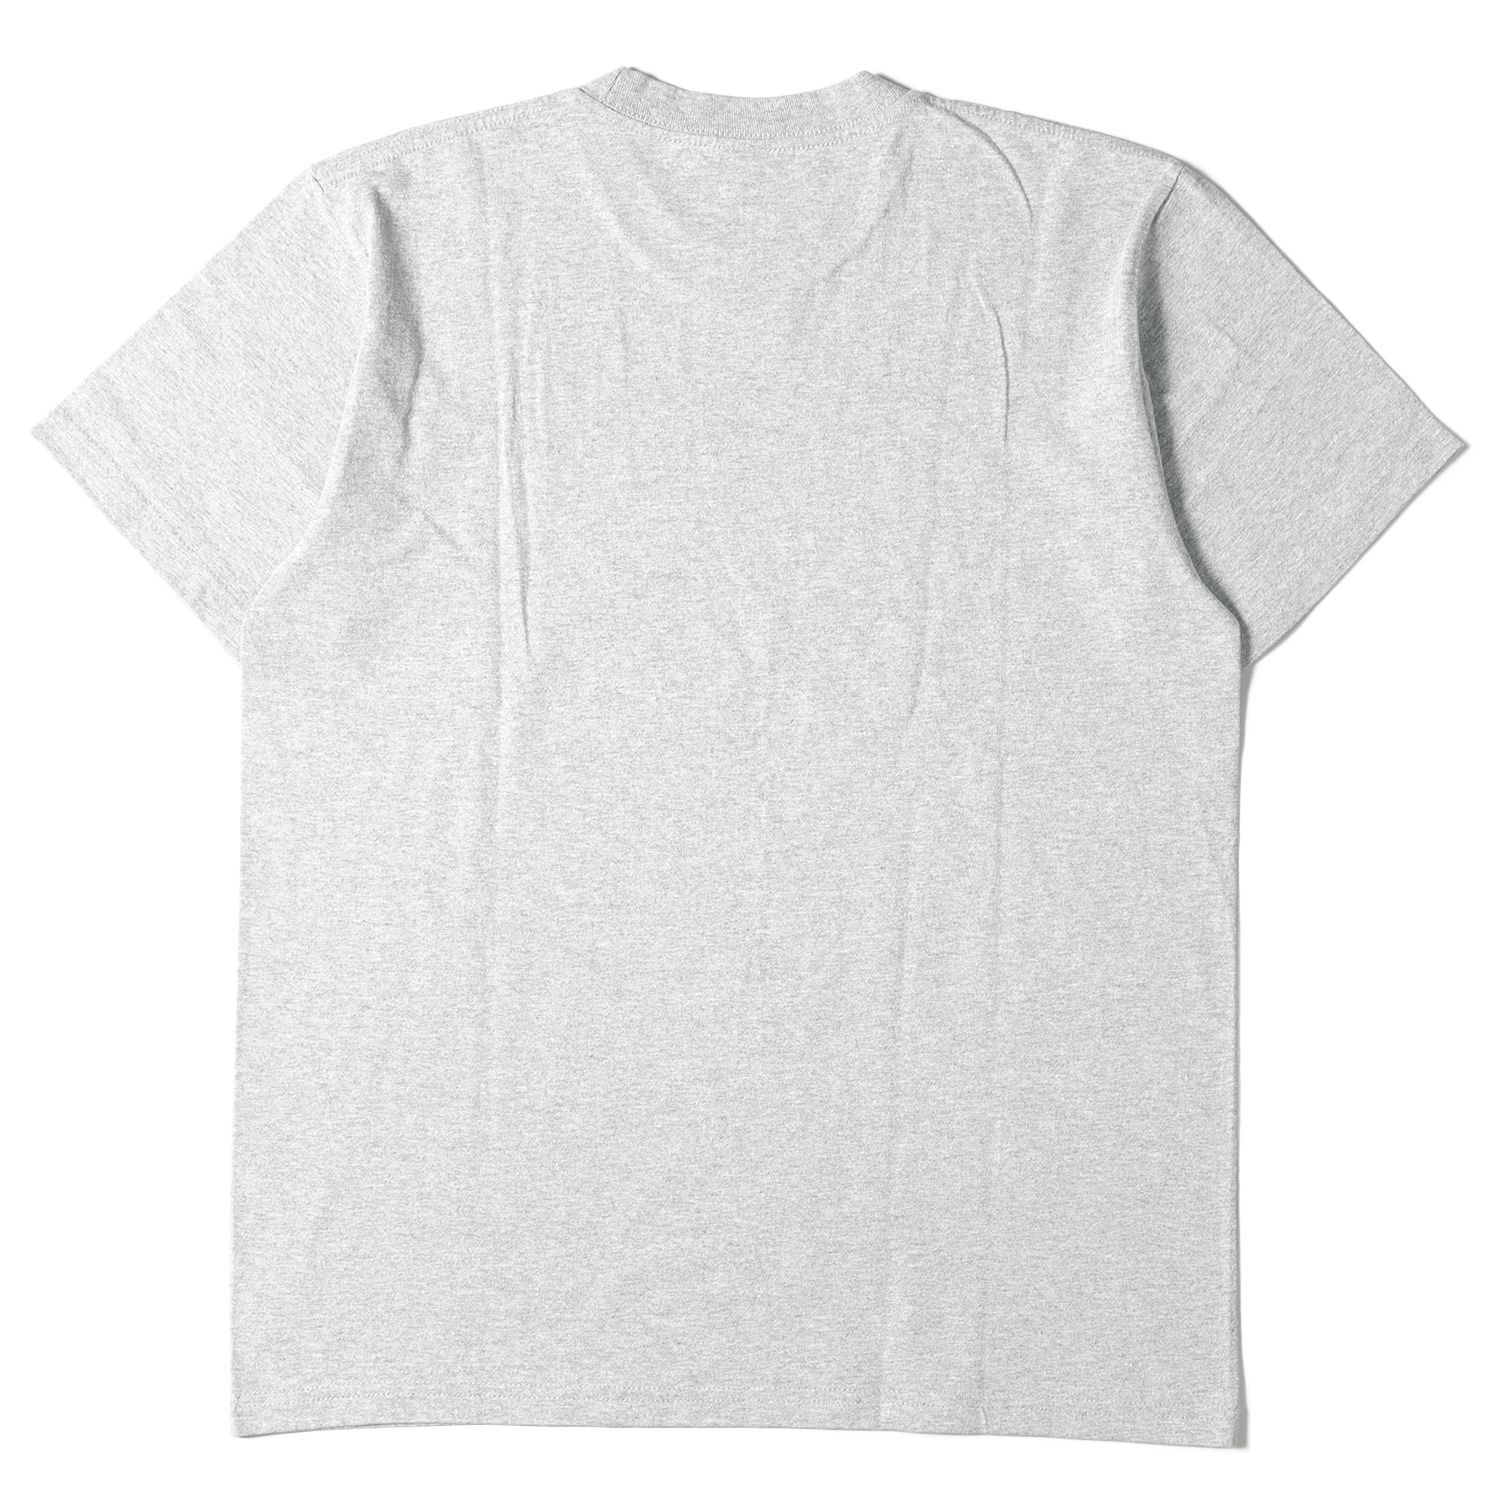 美品 Supreme シュプリーム Tシャツ サイズ:M バンダナ ボックスロゴ クルーネック Tシャツ Bandana Box Logo Tee  19AW ヘザーグレー トップス カットソー 半袖